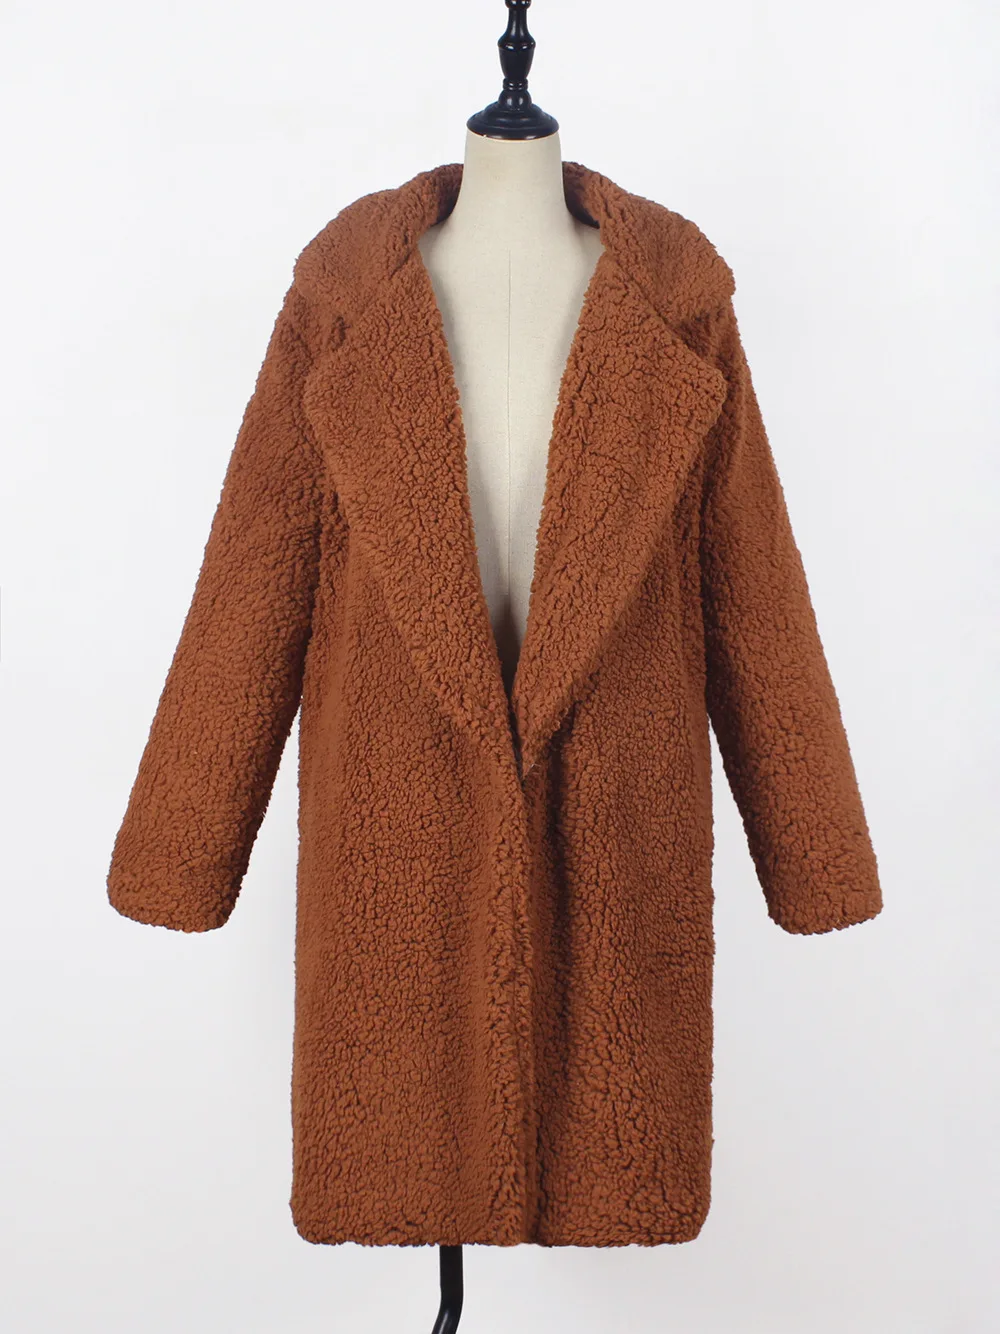 Женское зимнее пушистое пальто, куртка размера плюс, длинное пальто из искусственного меха, элегантная женская верхняя одежда, плотное теплое пальто, Jaqueta Feminina